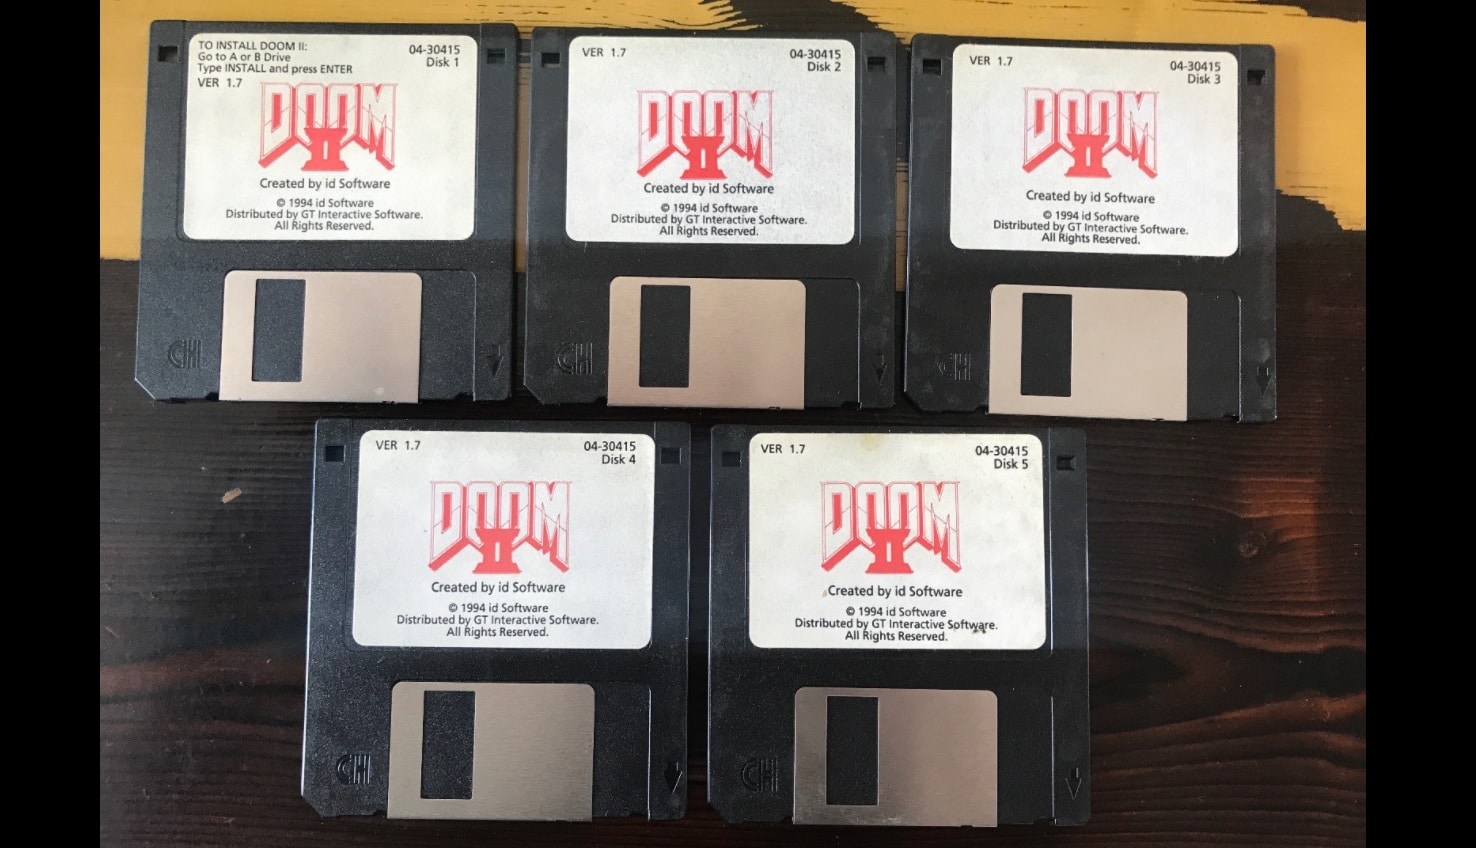 แฟนเกมร่วมประมูลแผ่น Floppy disks เกม DOOM 2 ตอนนี้ราคาทะลุแสนบาทแล้ว